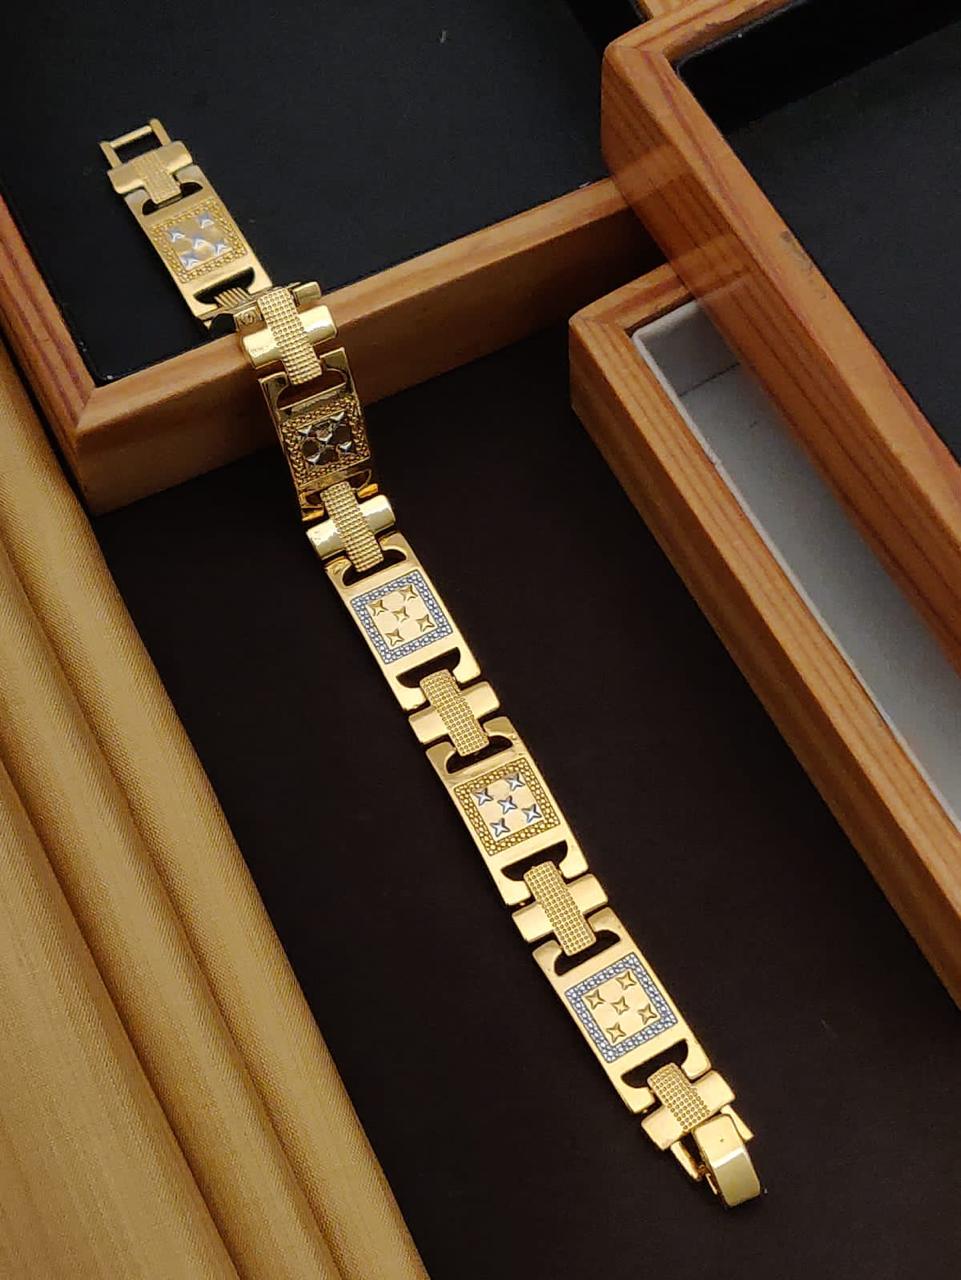 Noel Bracelet - Textured silver link bracelet with gold accent